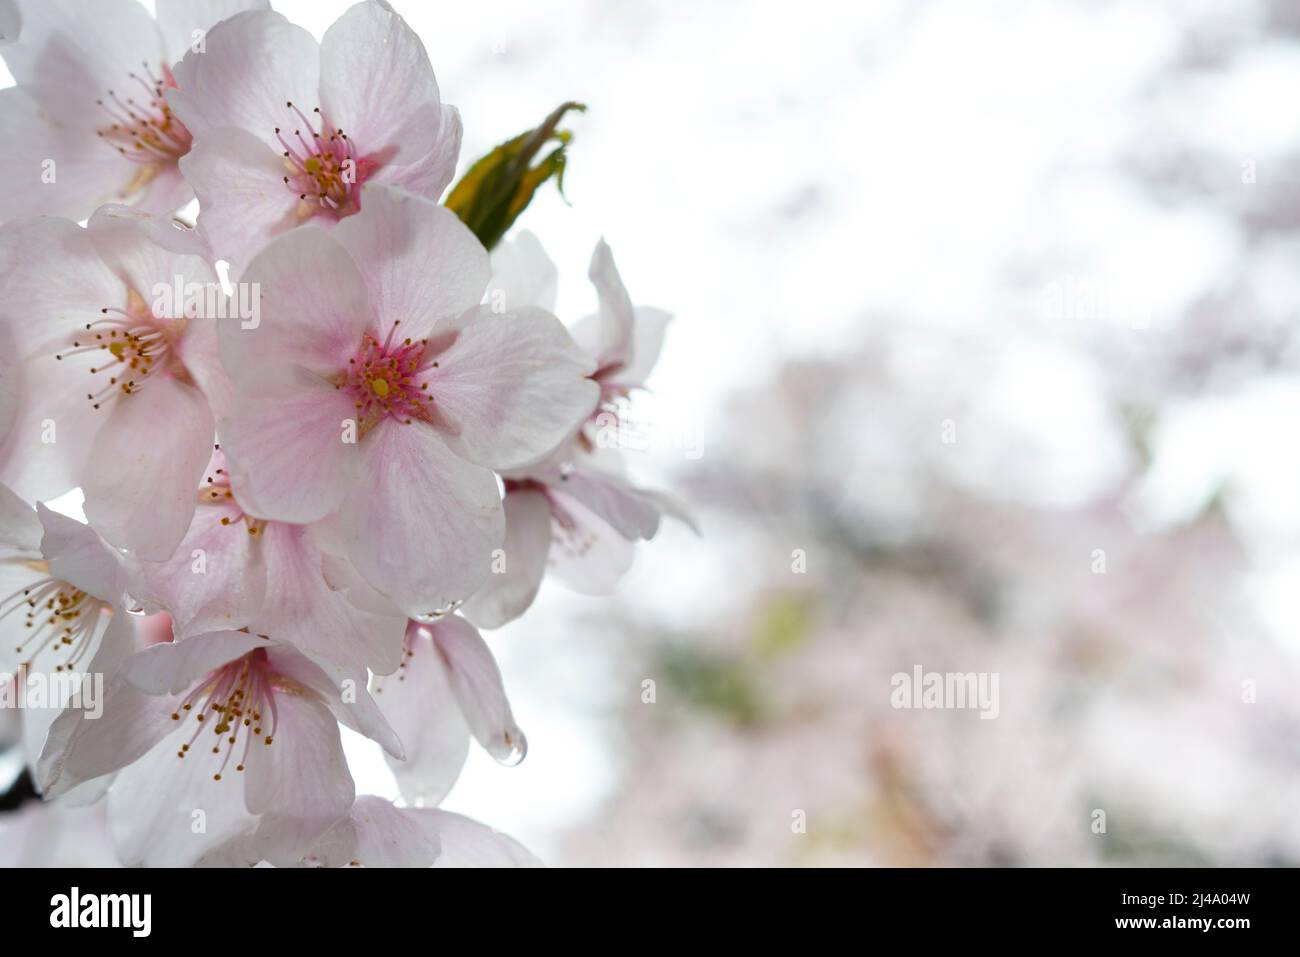 A close-up petal of cherry blossom (sakura) flower Stock Photo